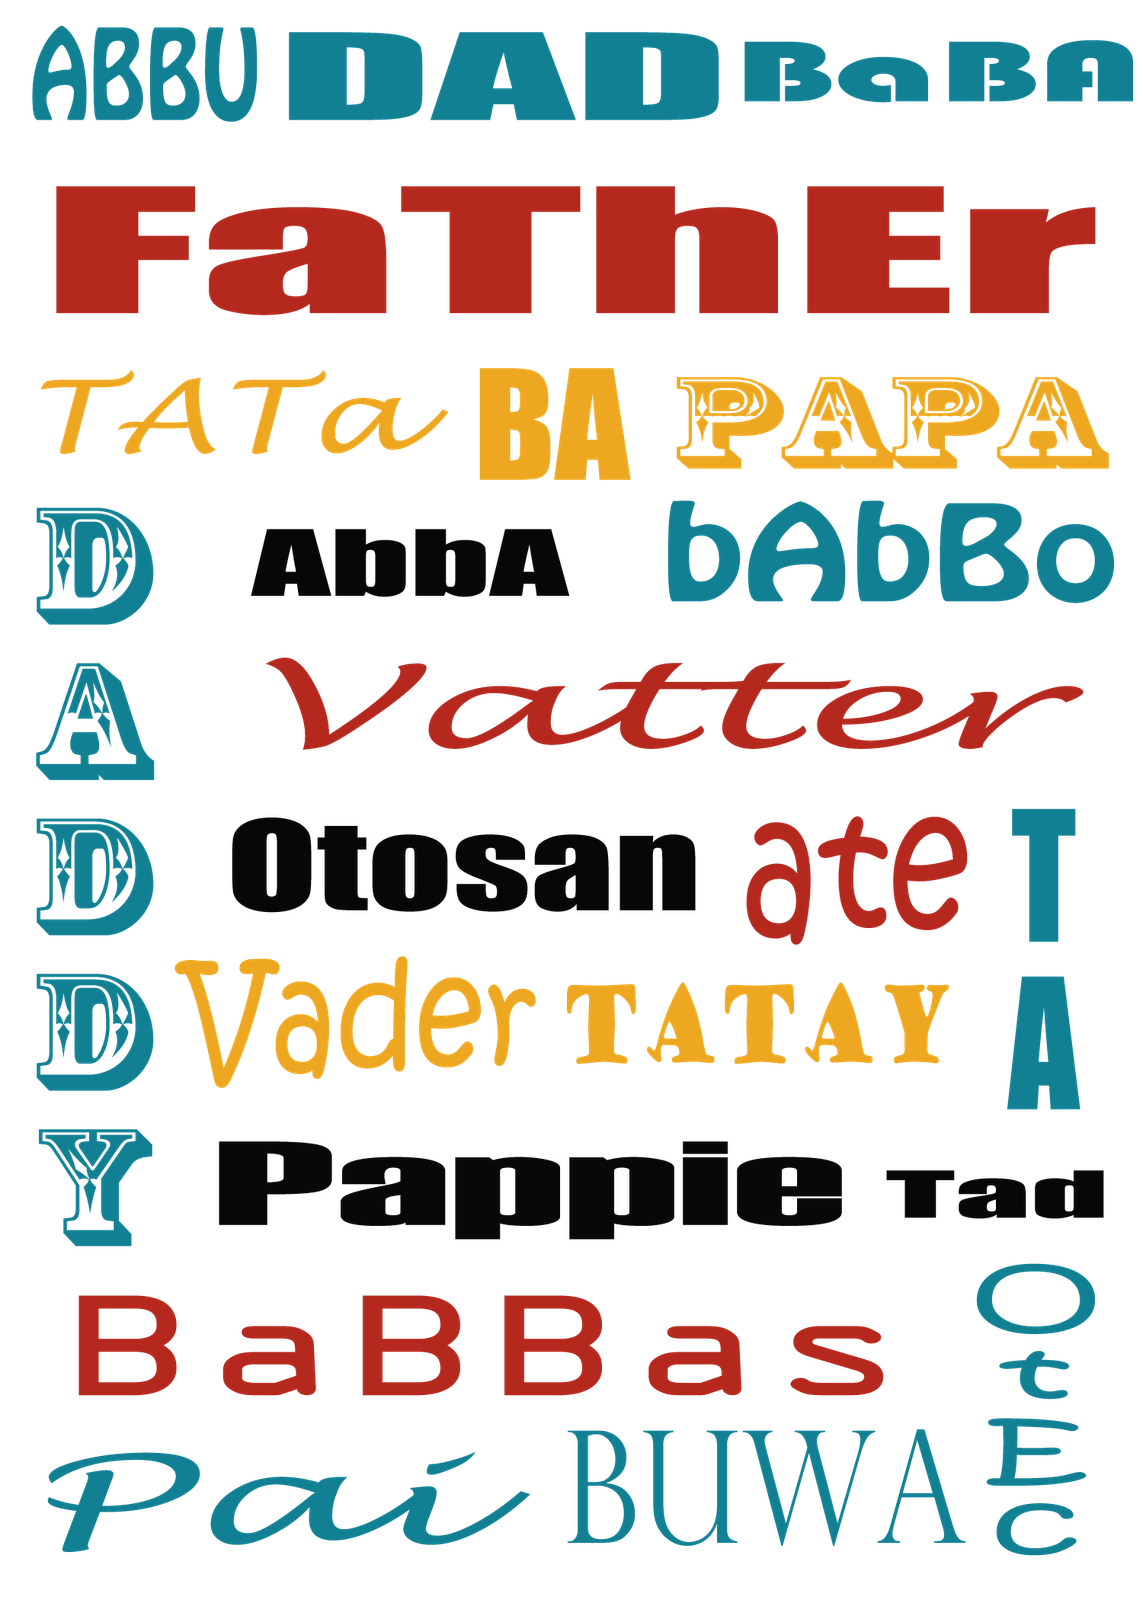 Father tatay